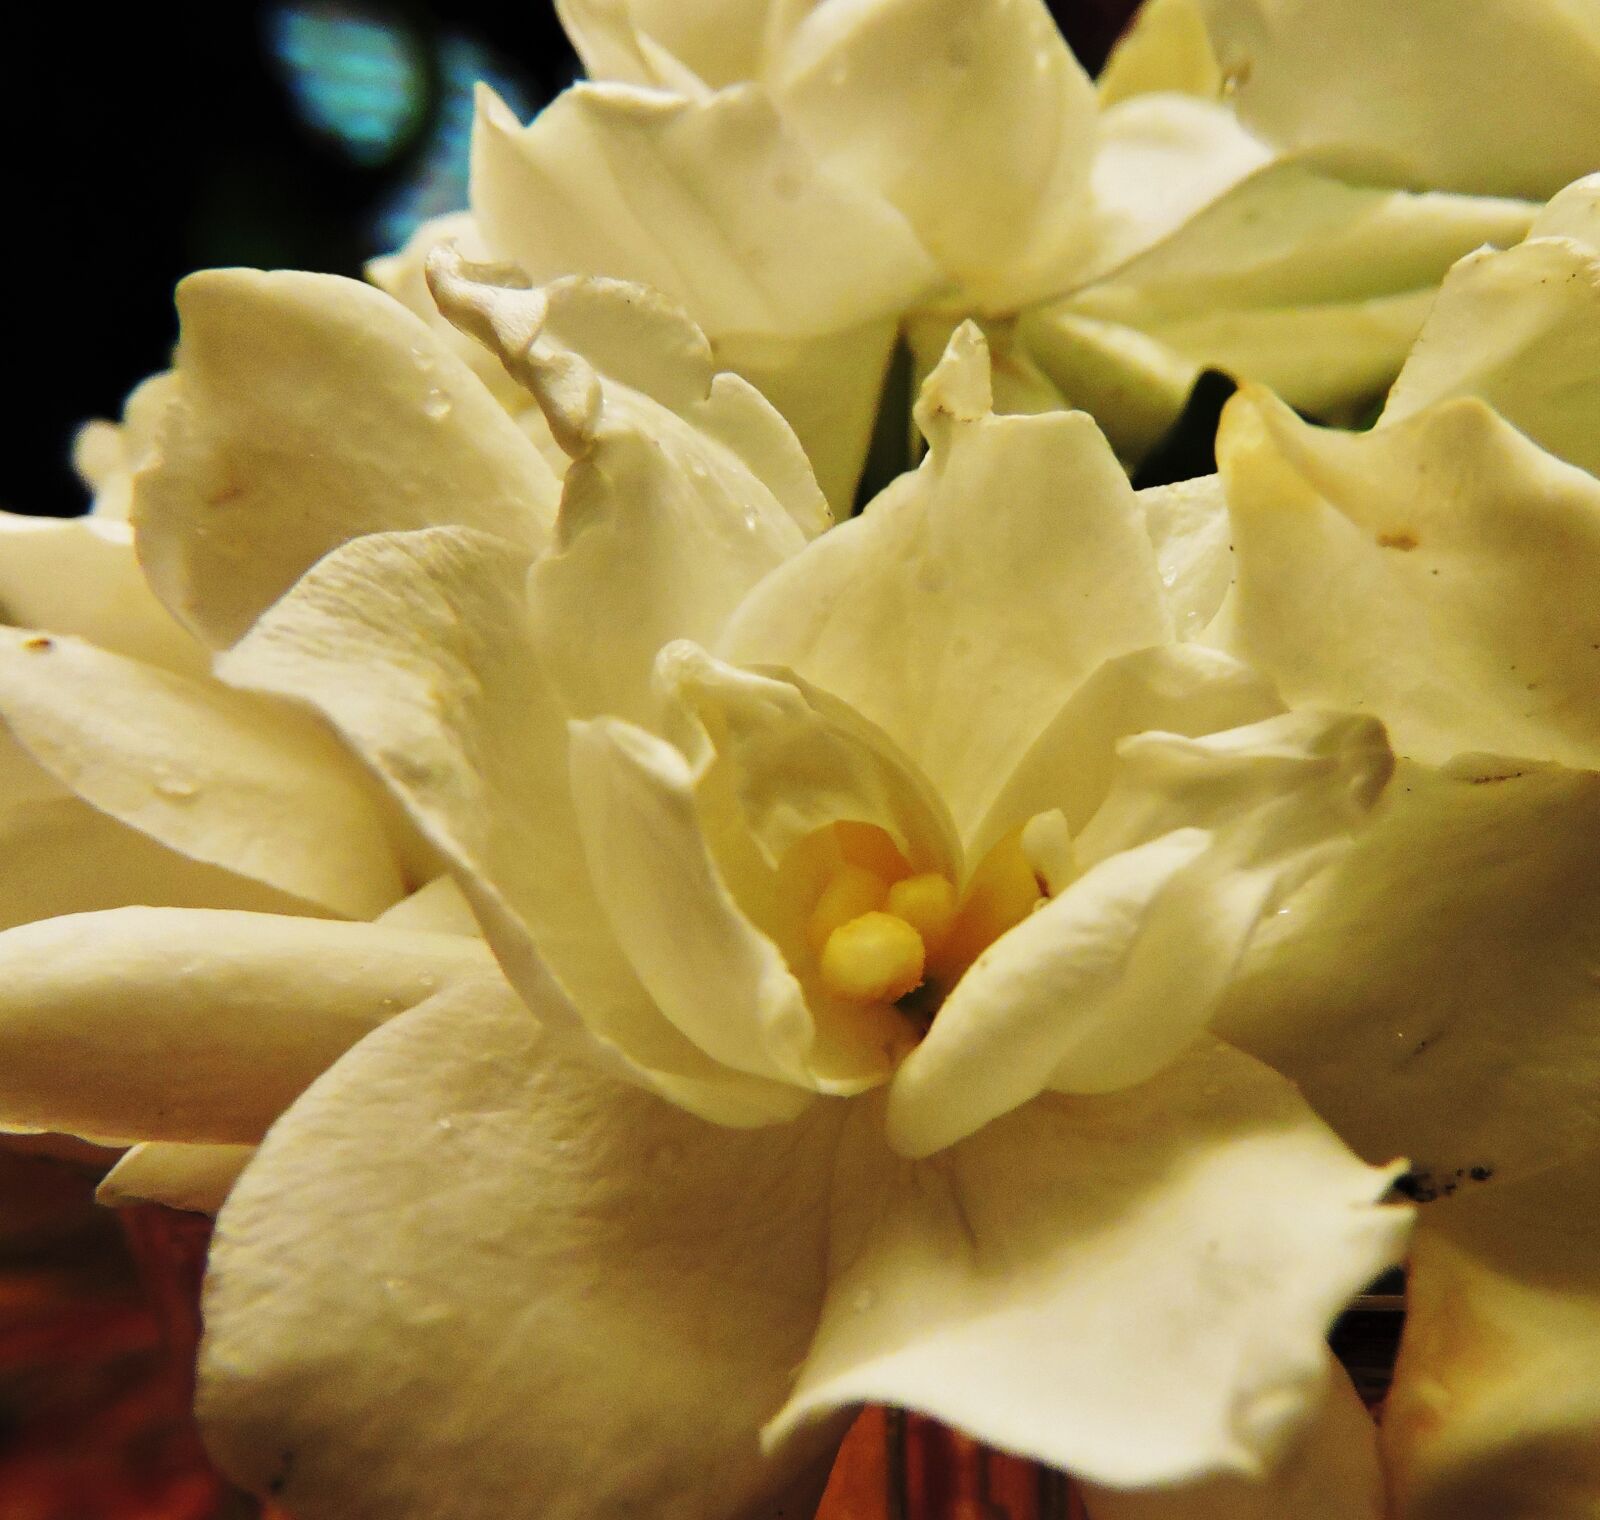 Nikon Coolpix P600 sample photo. Gardenias, flower, white photography